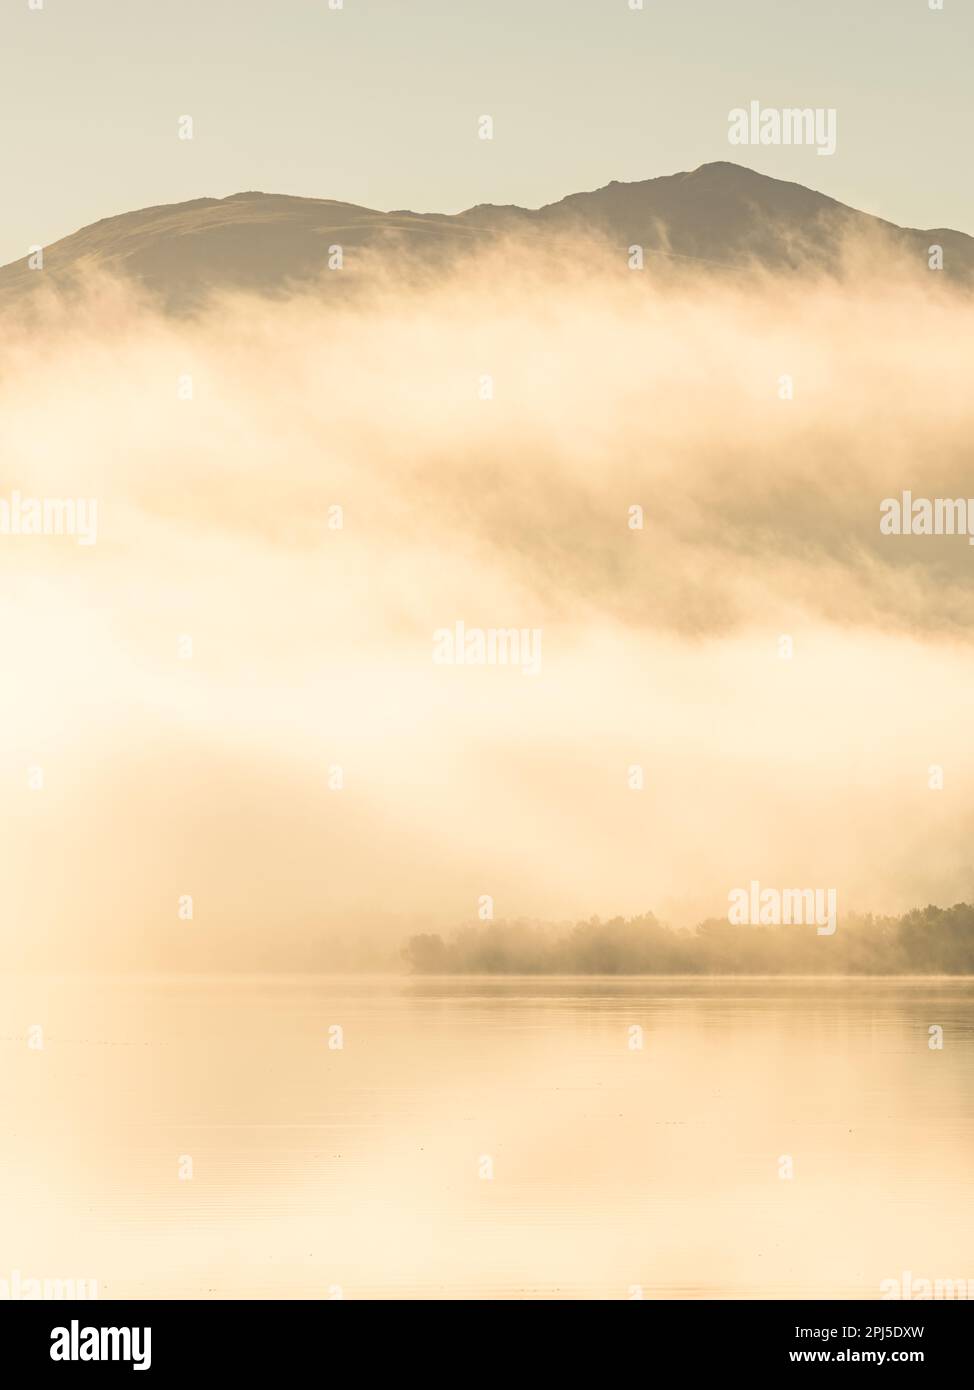 Une paisible scène matinale d'un lac brumeux reflétant les montagnes ensoleillées et les arbres, entouré par la nature intacte. Banque D'Images